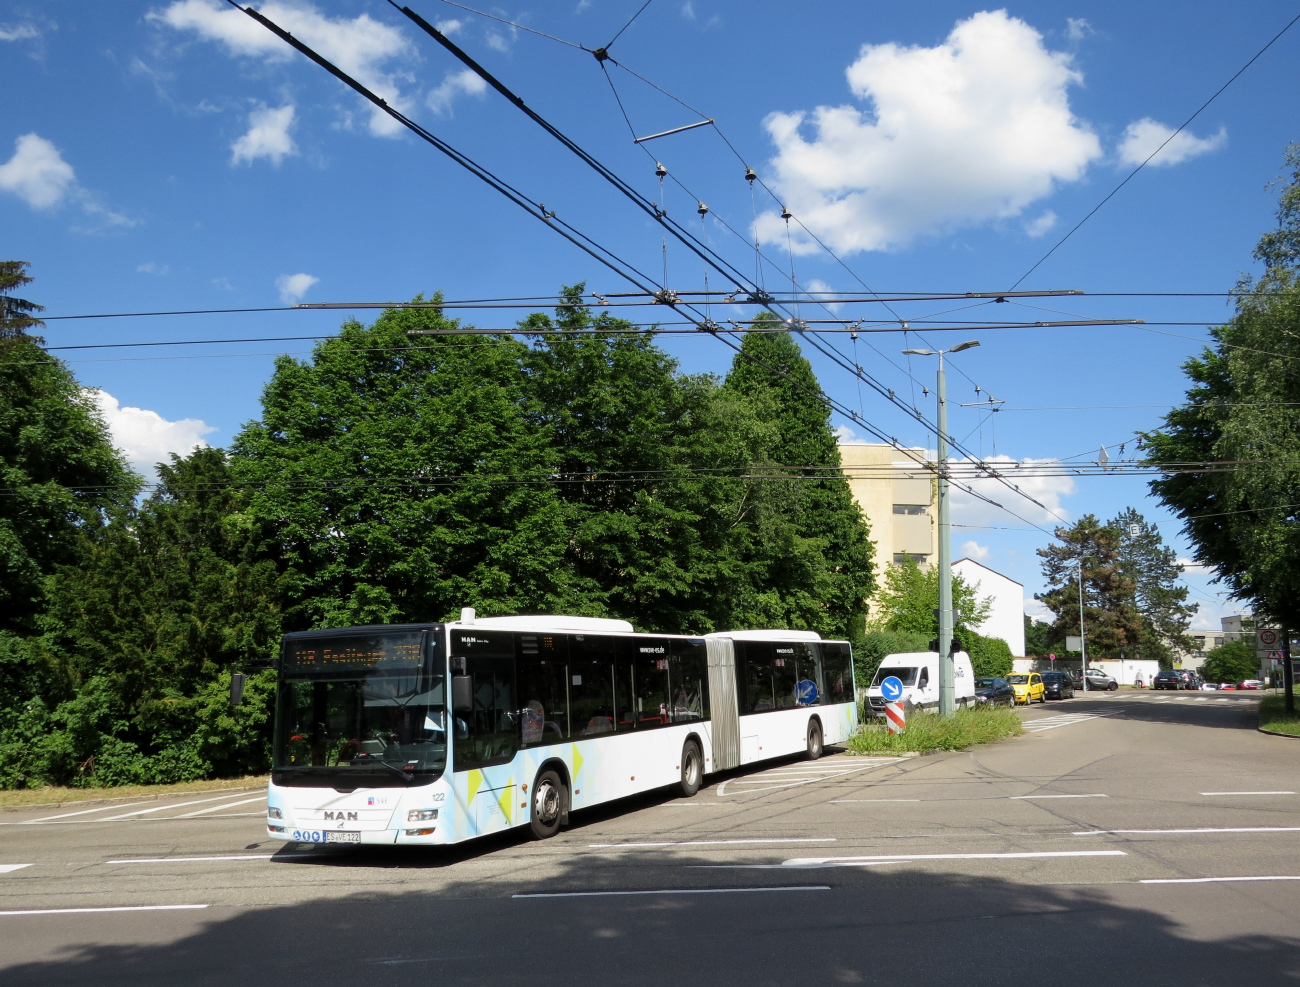 Эслинген — Троллейбусный линии и инфраструктура